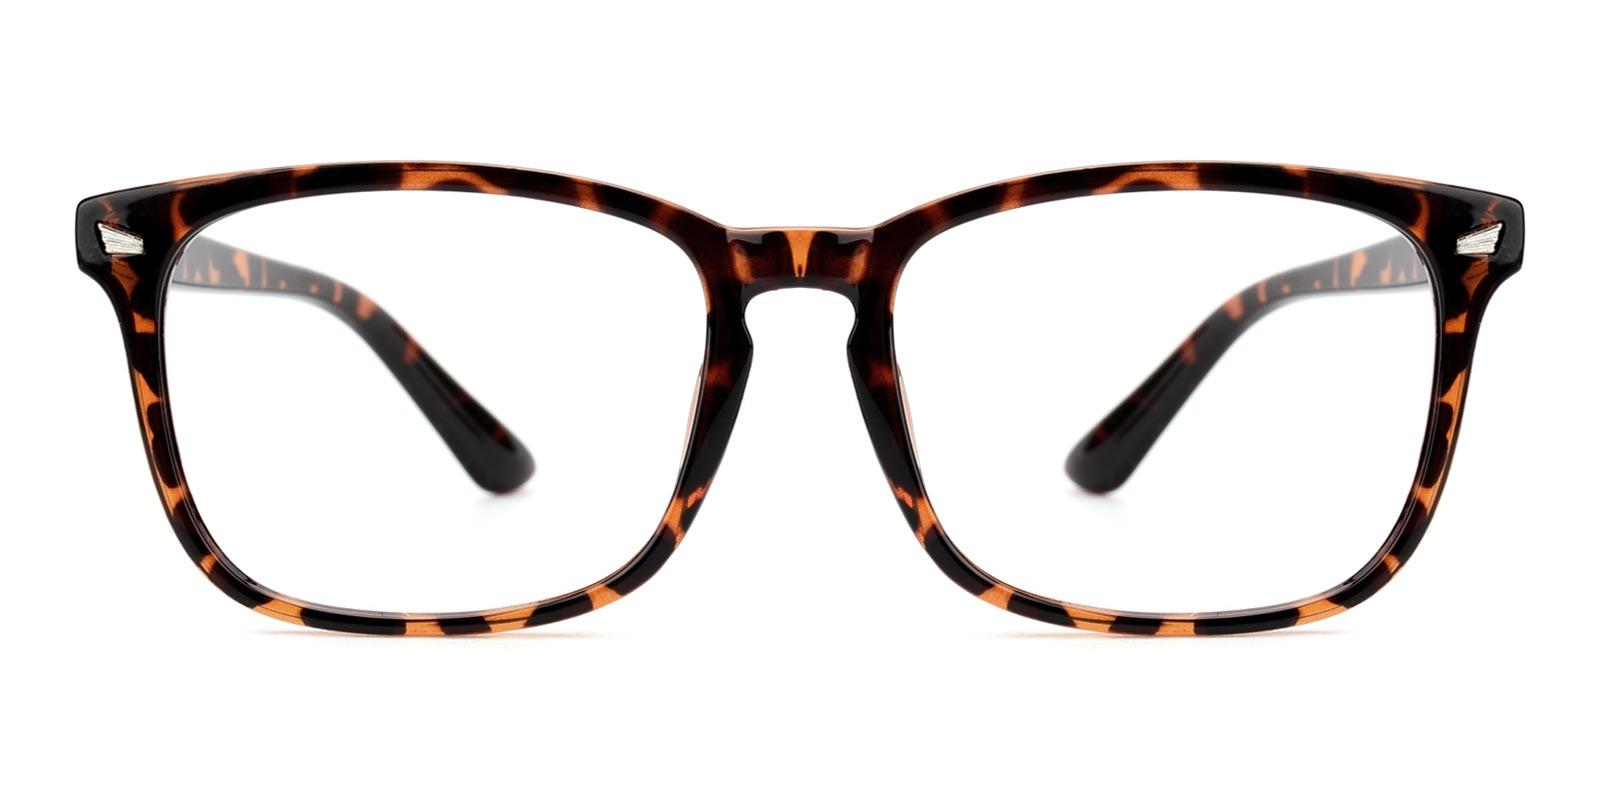 David-Tortoise-Rectangle-TR-Eyeglasses-detail